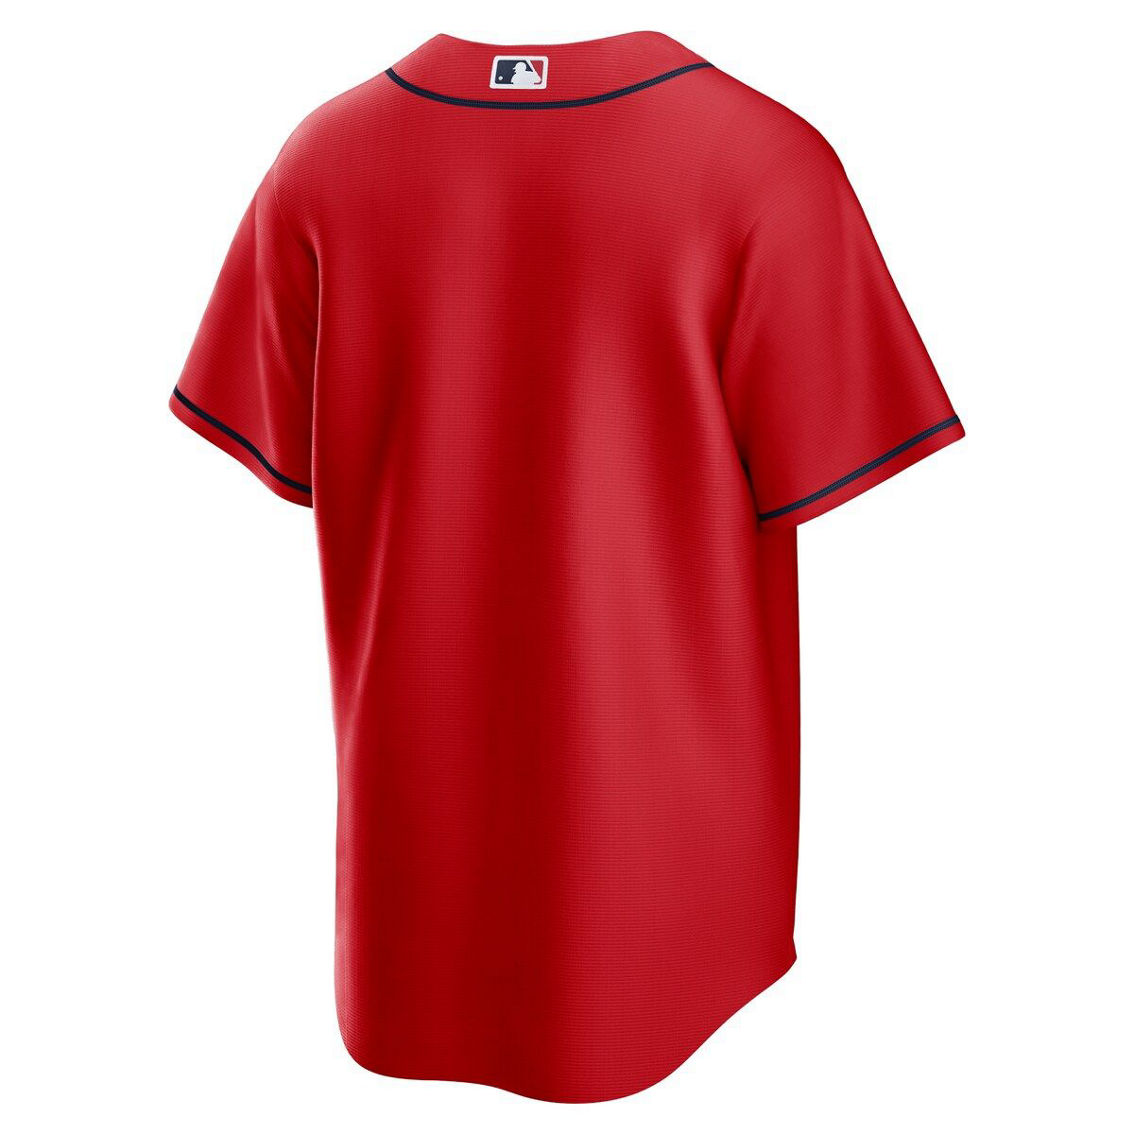 Nike Men's Red Atlanta Braves Alternate Replica Team Jersey - Image 4 of 4